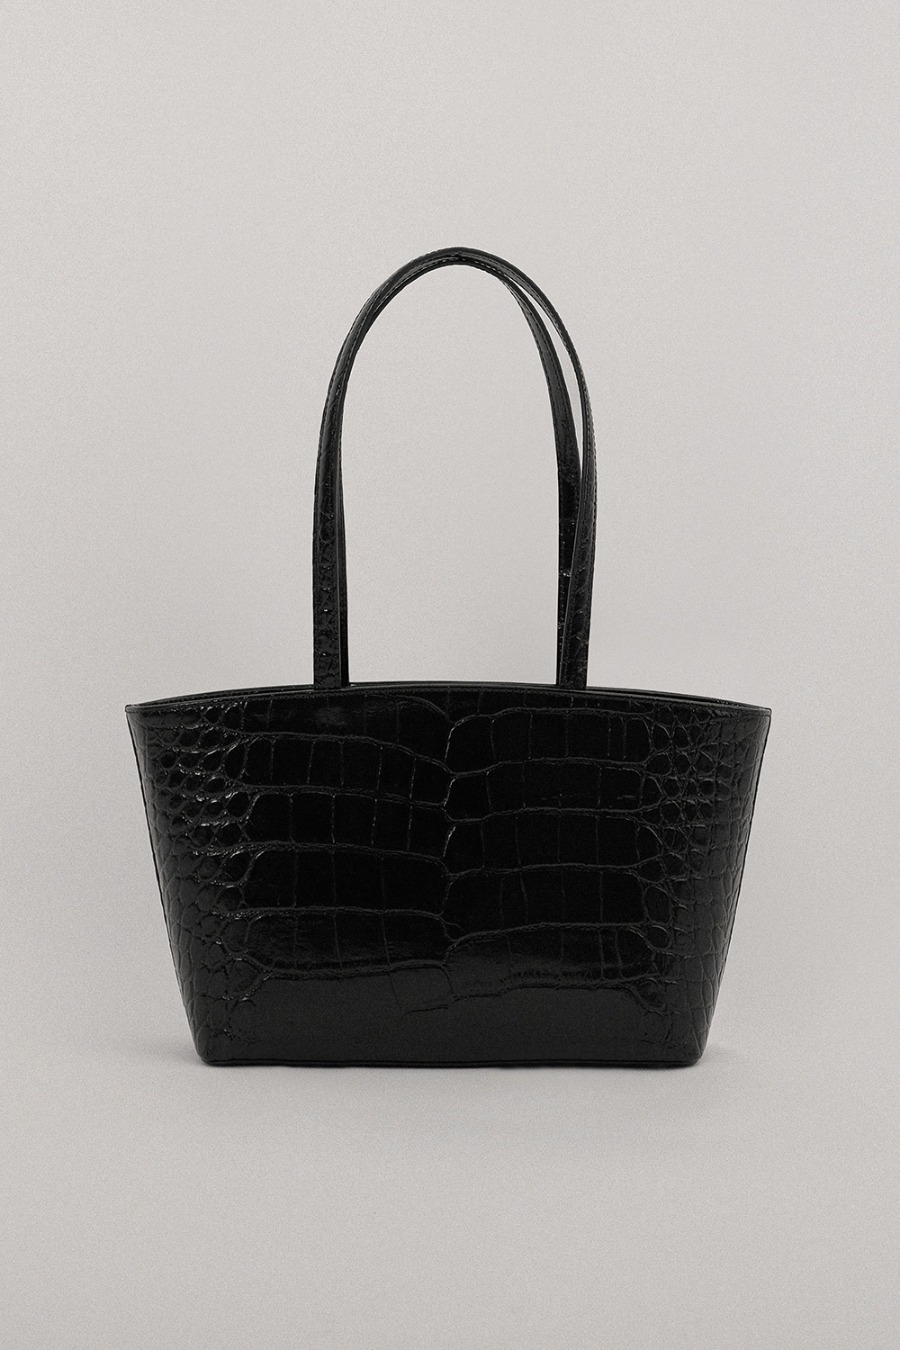 Colline bag (croco black)